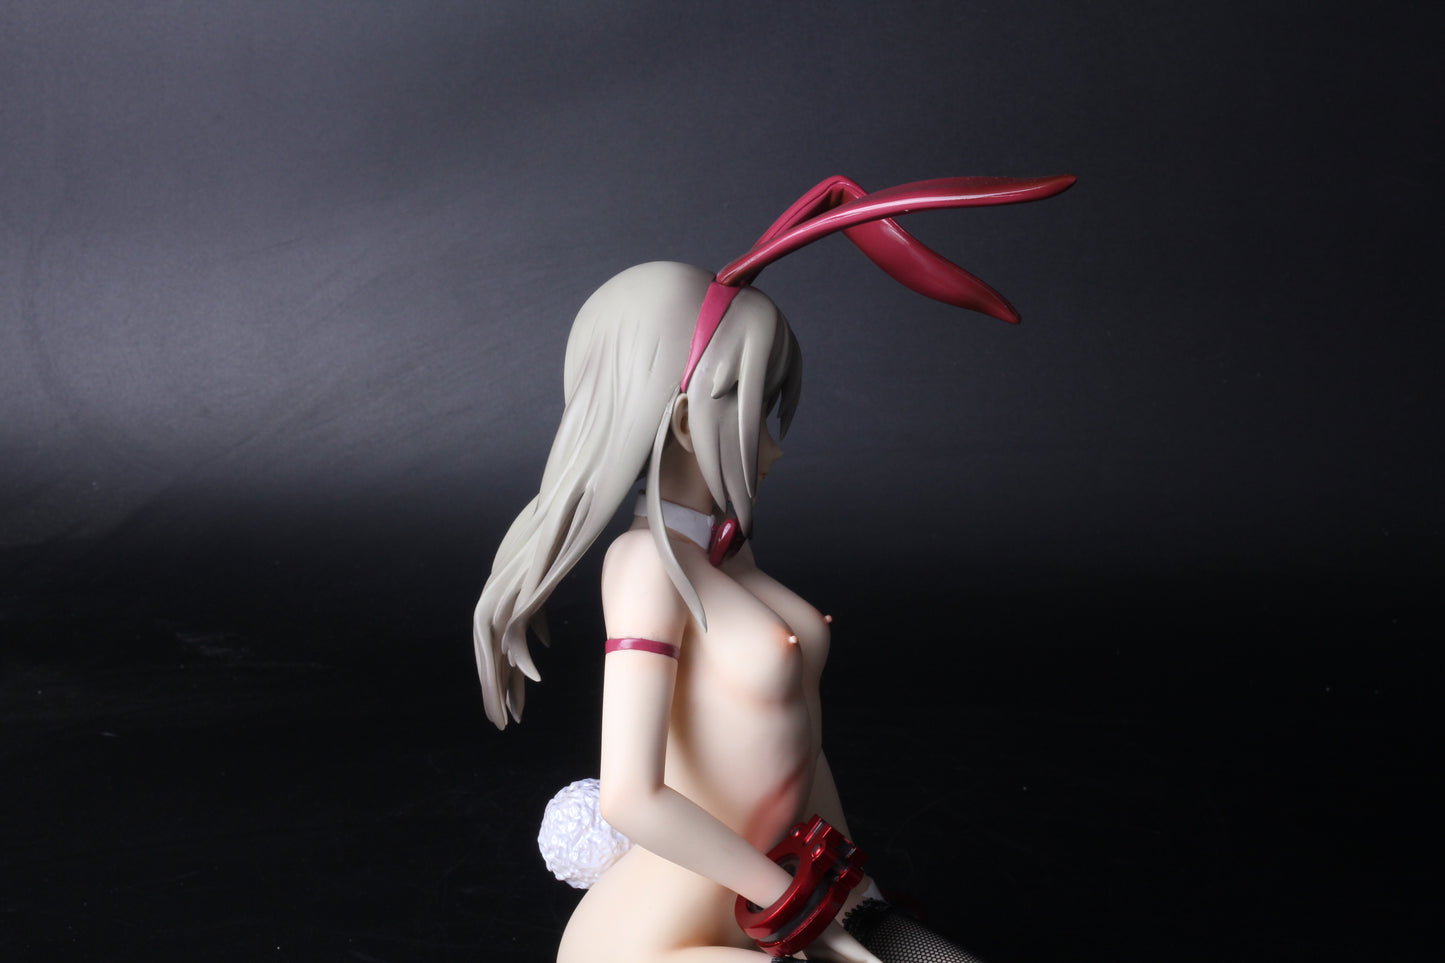 GOD EATER sexy Alisa Ilyinichna Omela 1/6 nude anime girl figure resin model figures